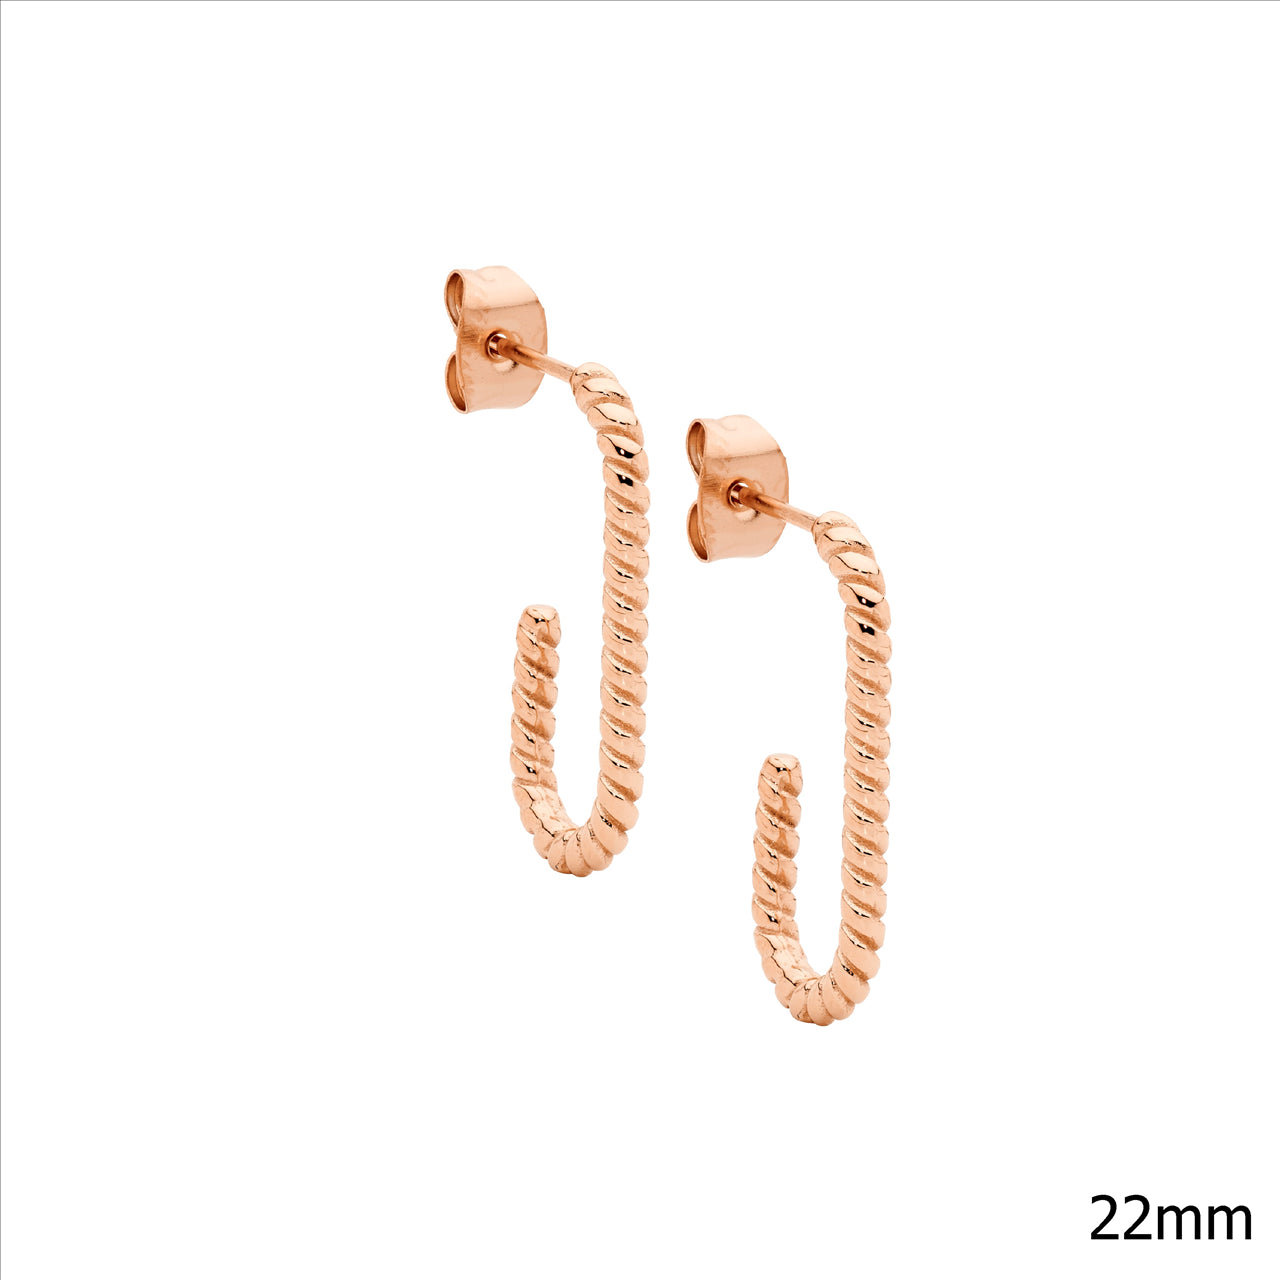 Ellani Stainless Steel IP Rose Gold Plated Hooked Twist Hoop Earrings